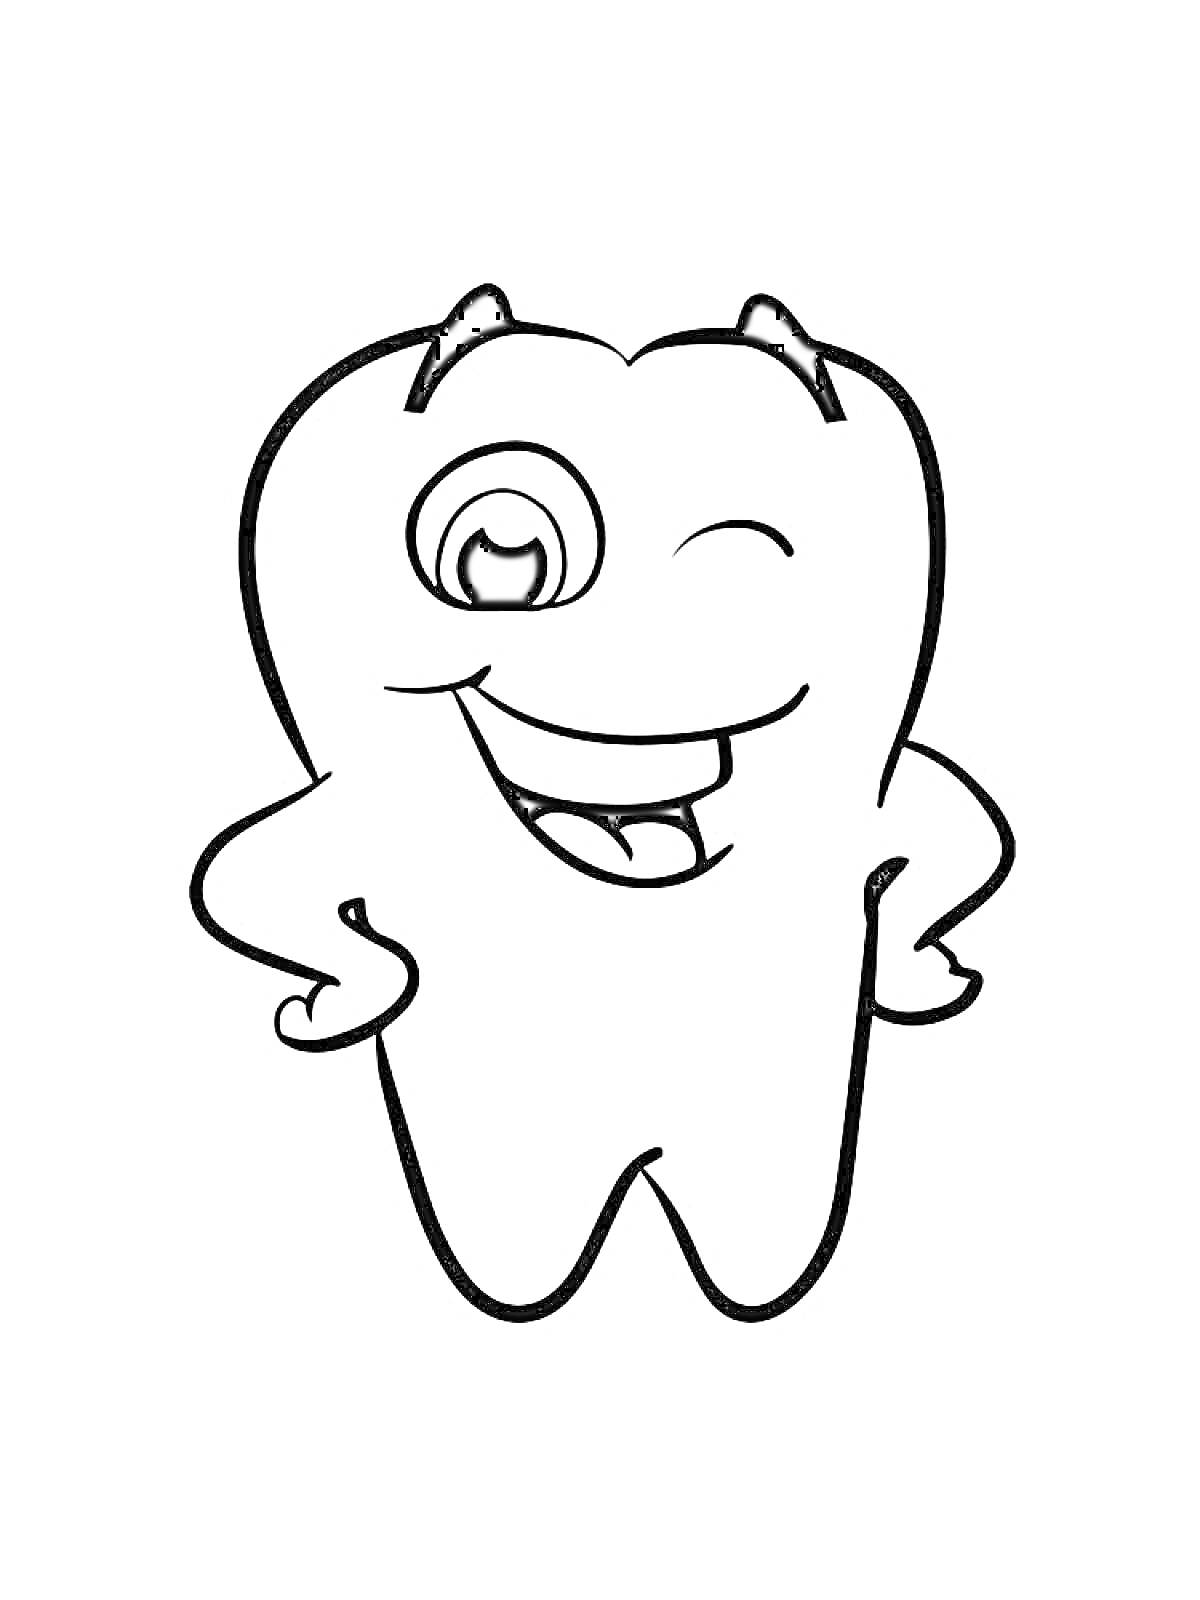 Раскраска Рисунок радостного зуба с подмигивающим глазом и поднятыми руками